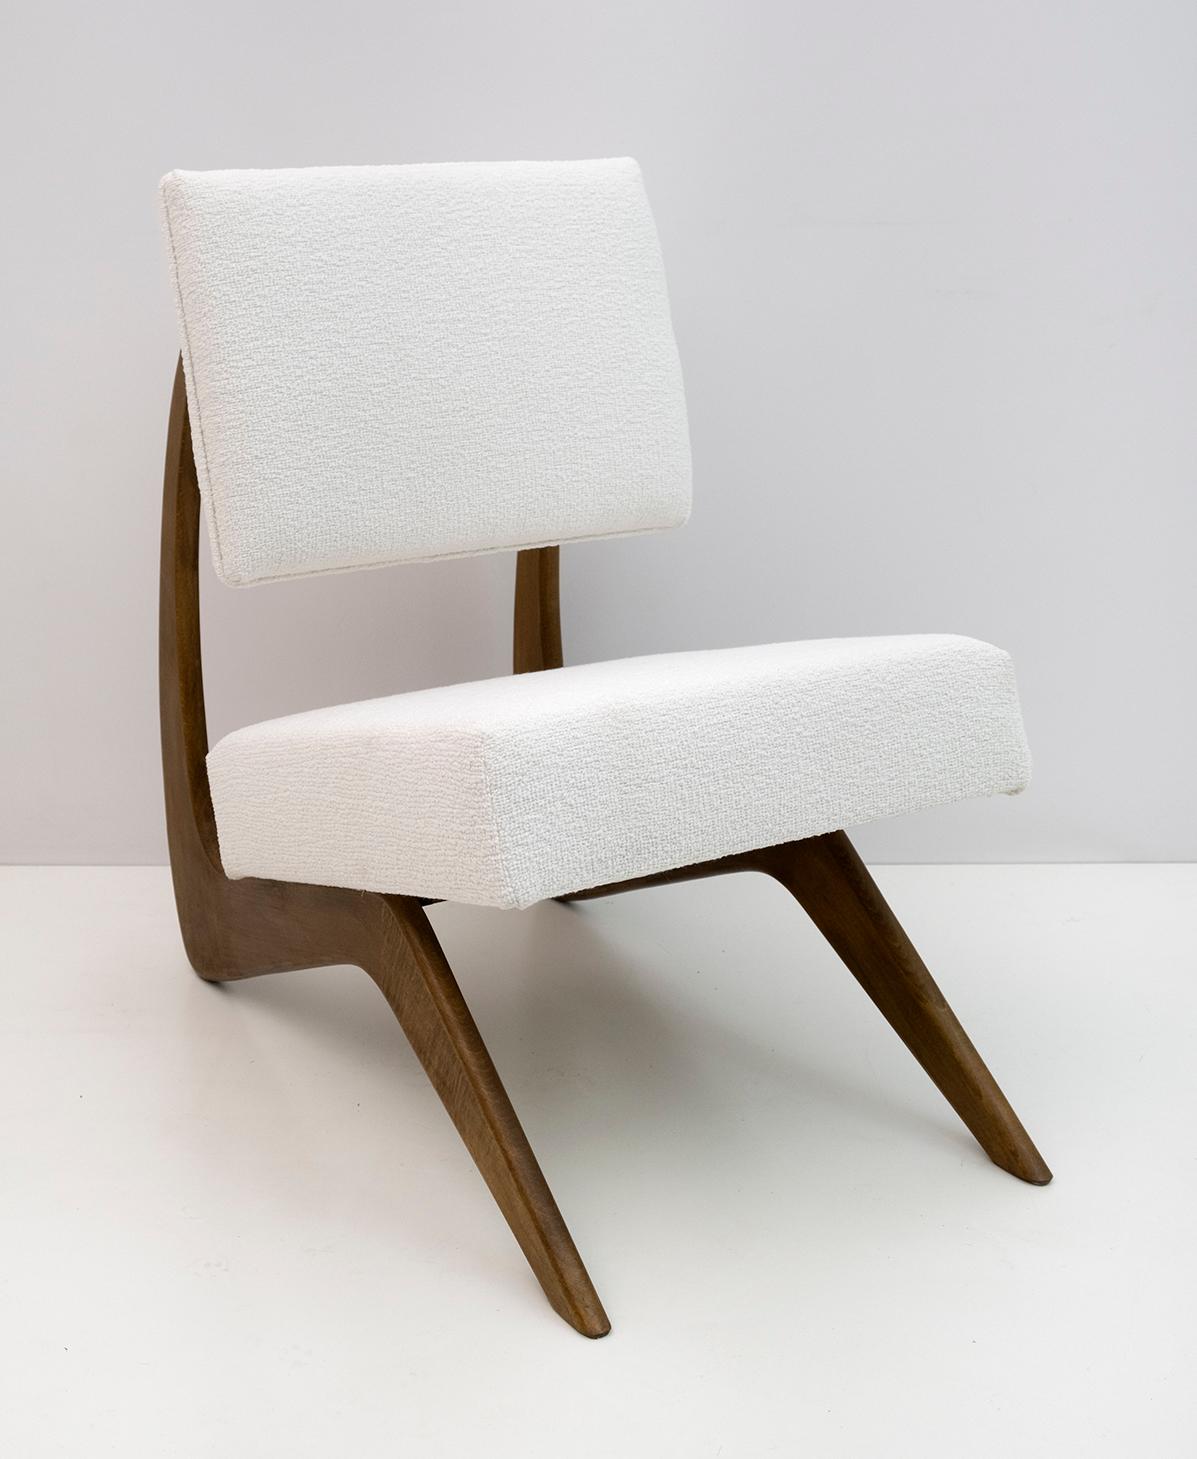 Fauteuil conçu par le designer américain Adrian Pearsall. Le cadre de cette chaise de salon de cocktail est en bois de noyer dans une belle forme incurvée et tapissé de tissu chenille blanc. Le fauteuil a été restauré et retapissé.